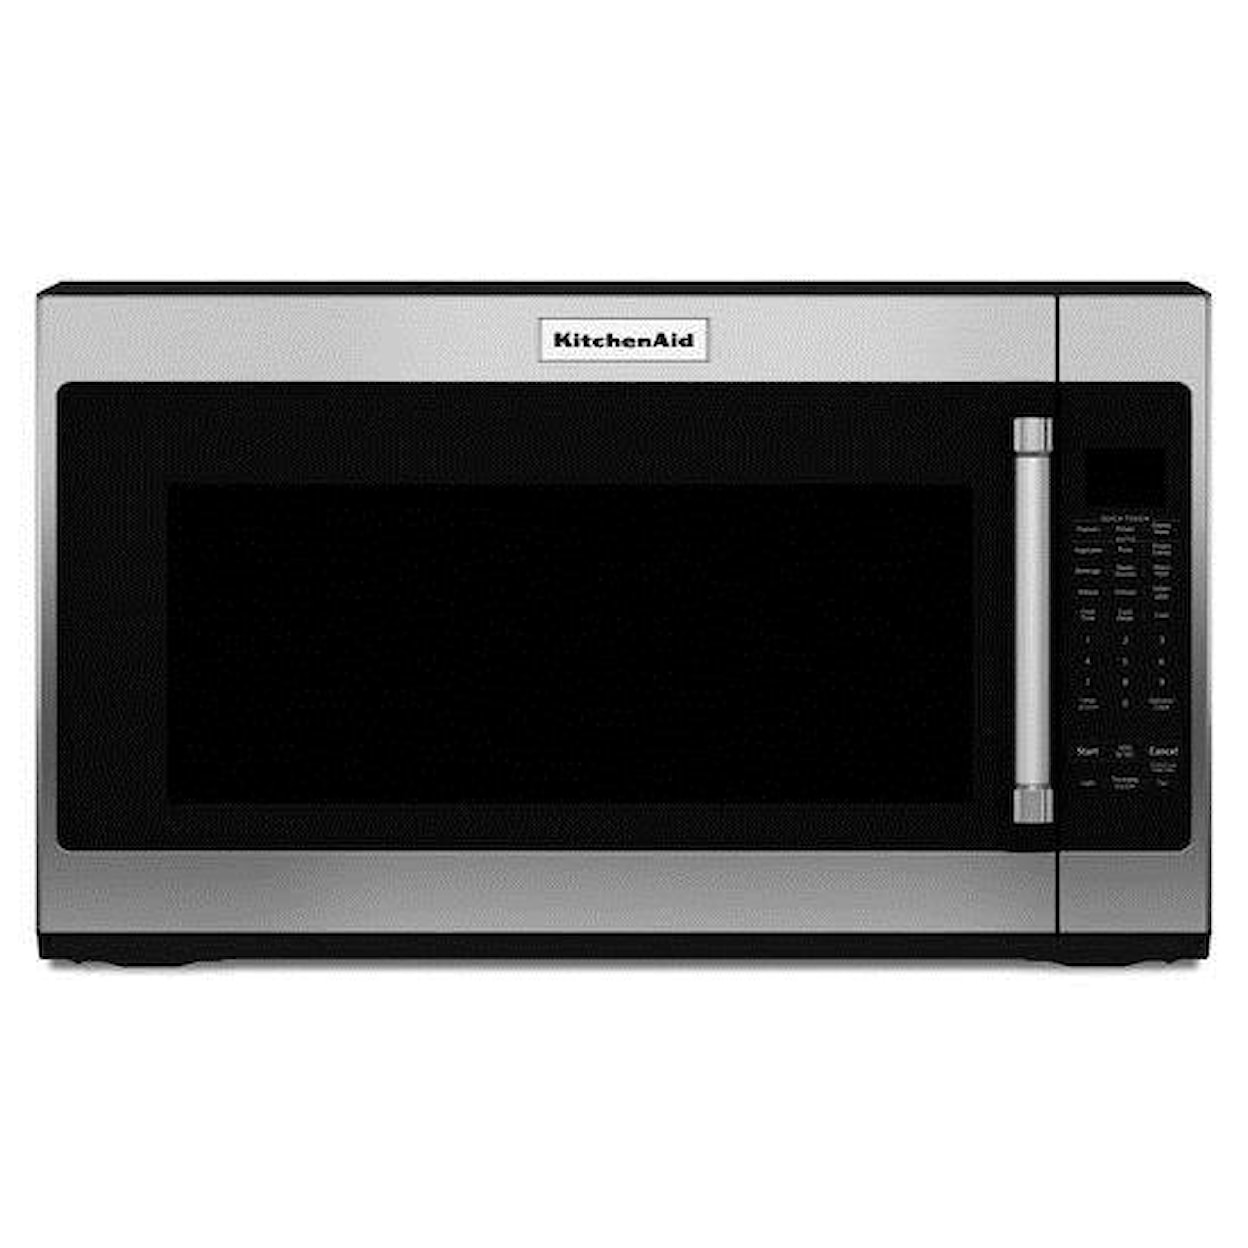 KitchenAid Microwaves - Kitchenaid 2.0 cu. ft. 1000-Watt Microwave